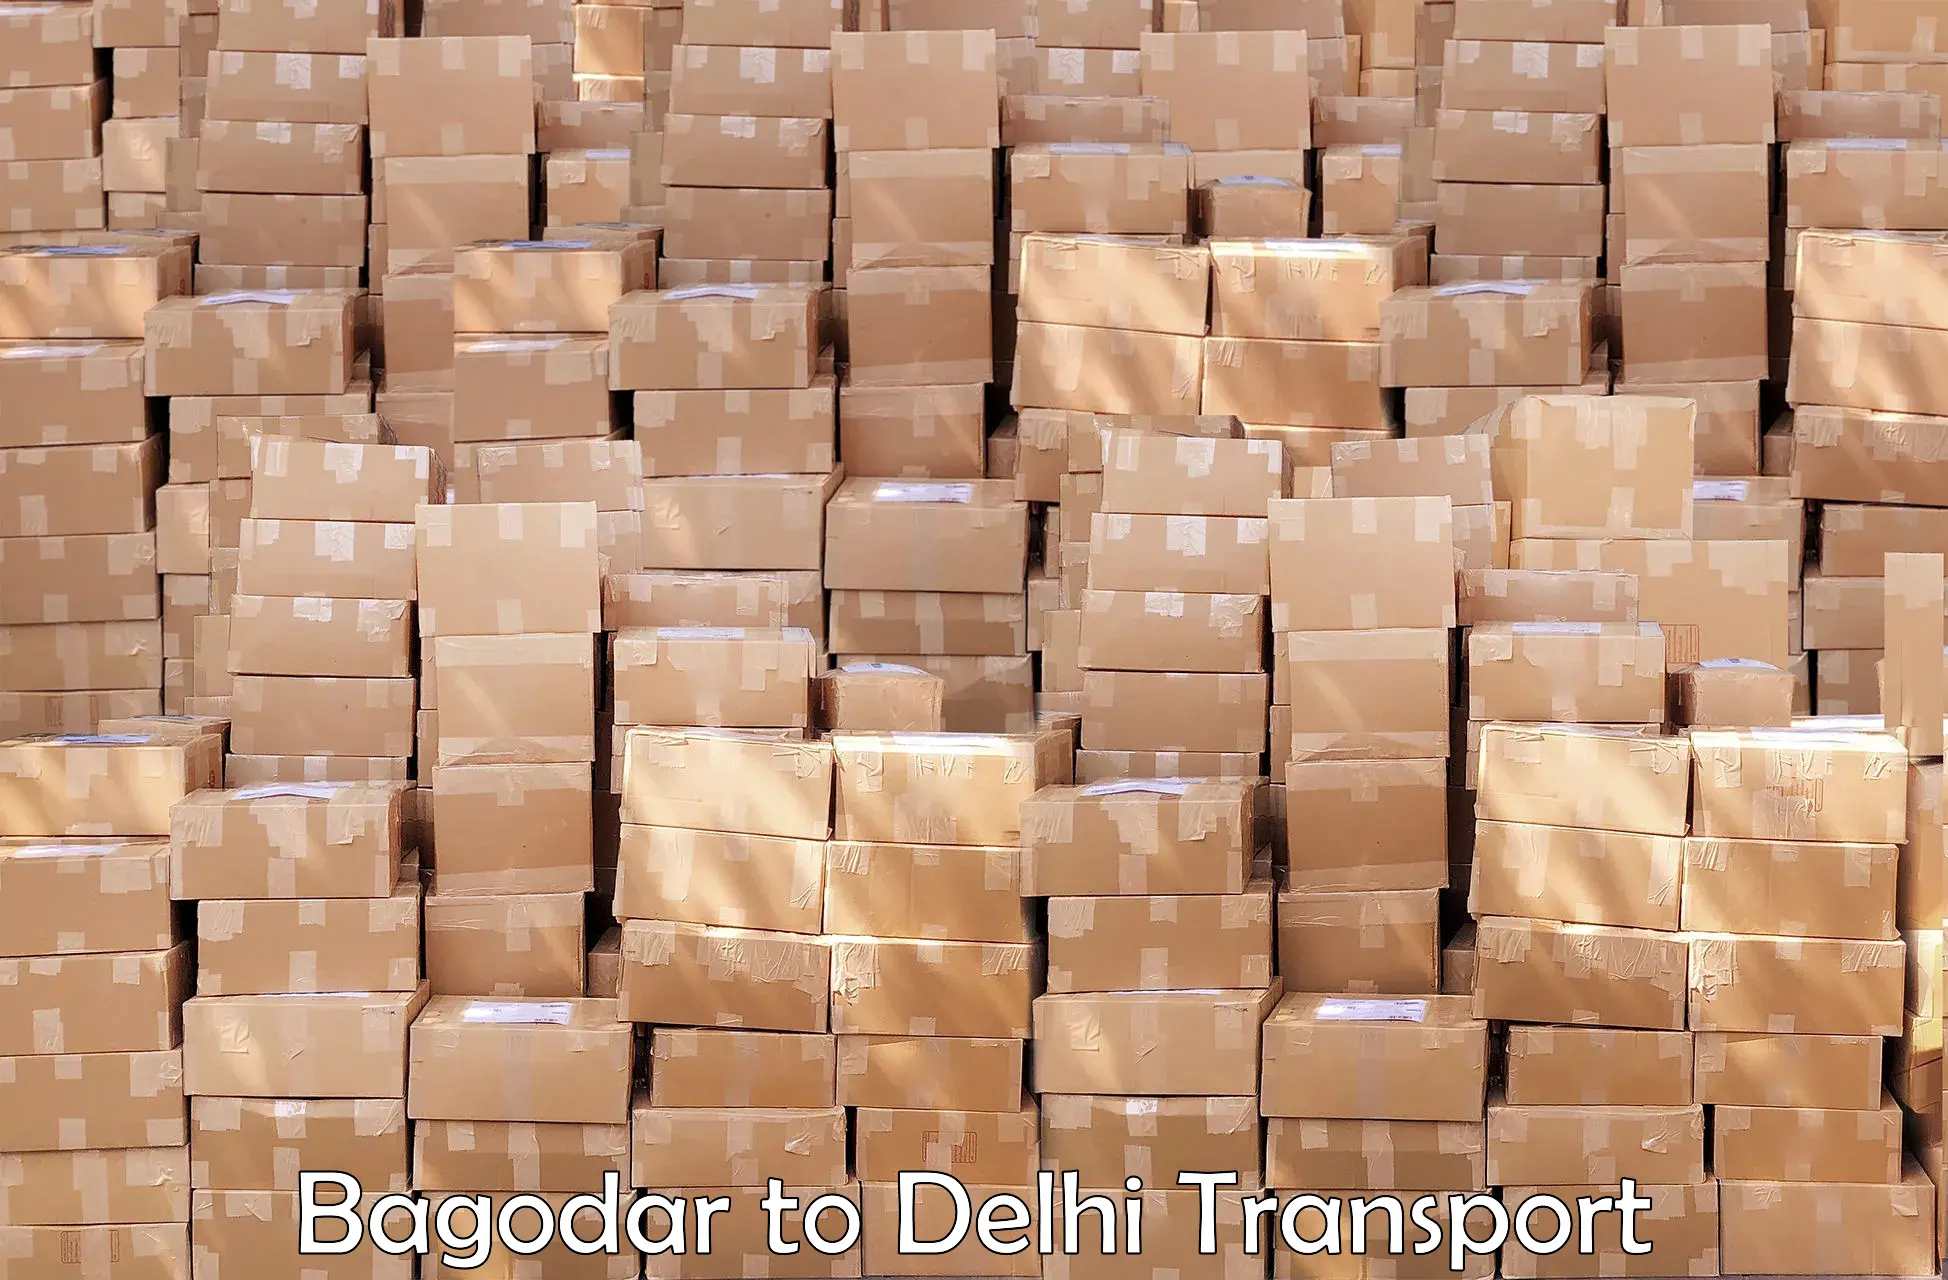 Truck transport companies in India in Bagodar to NIT Delhi